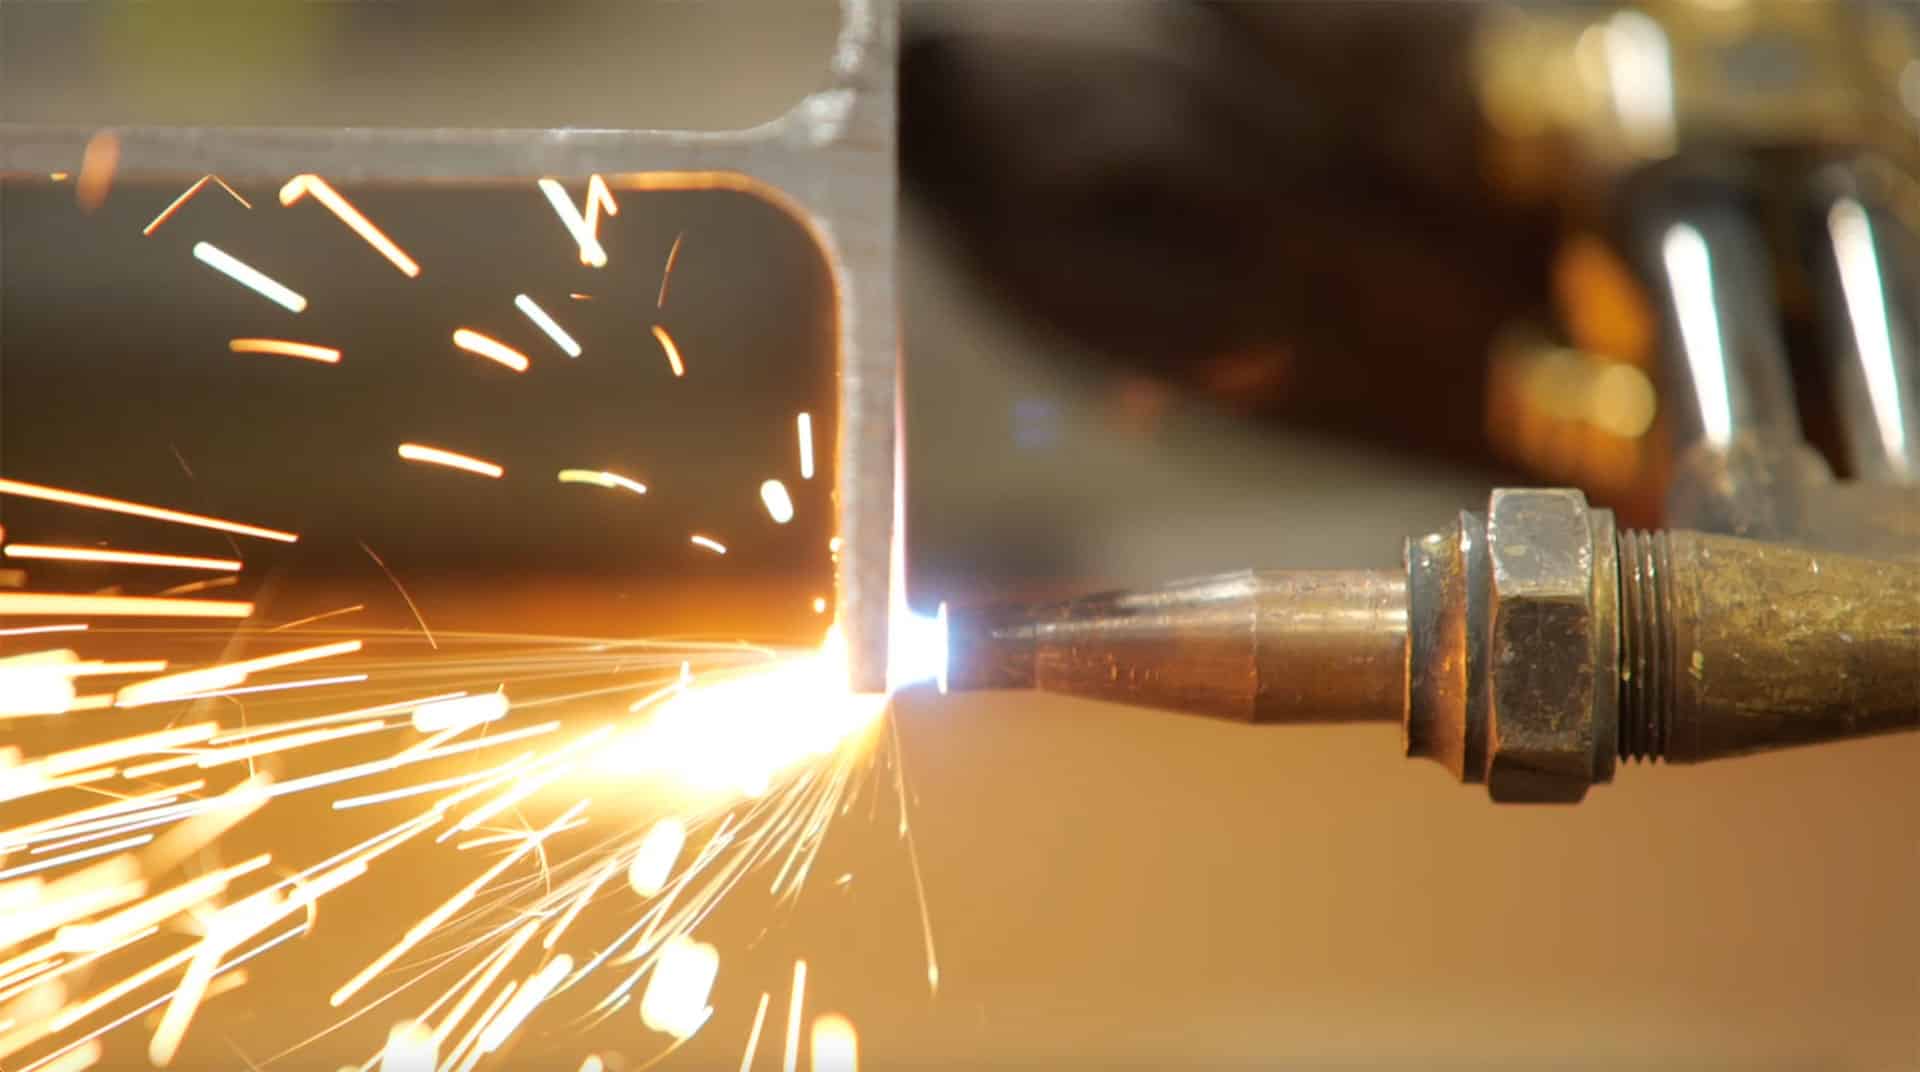 spot welding a piece of metal